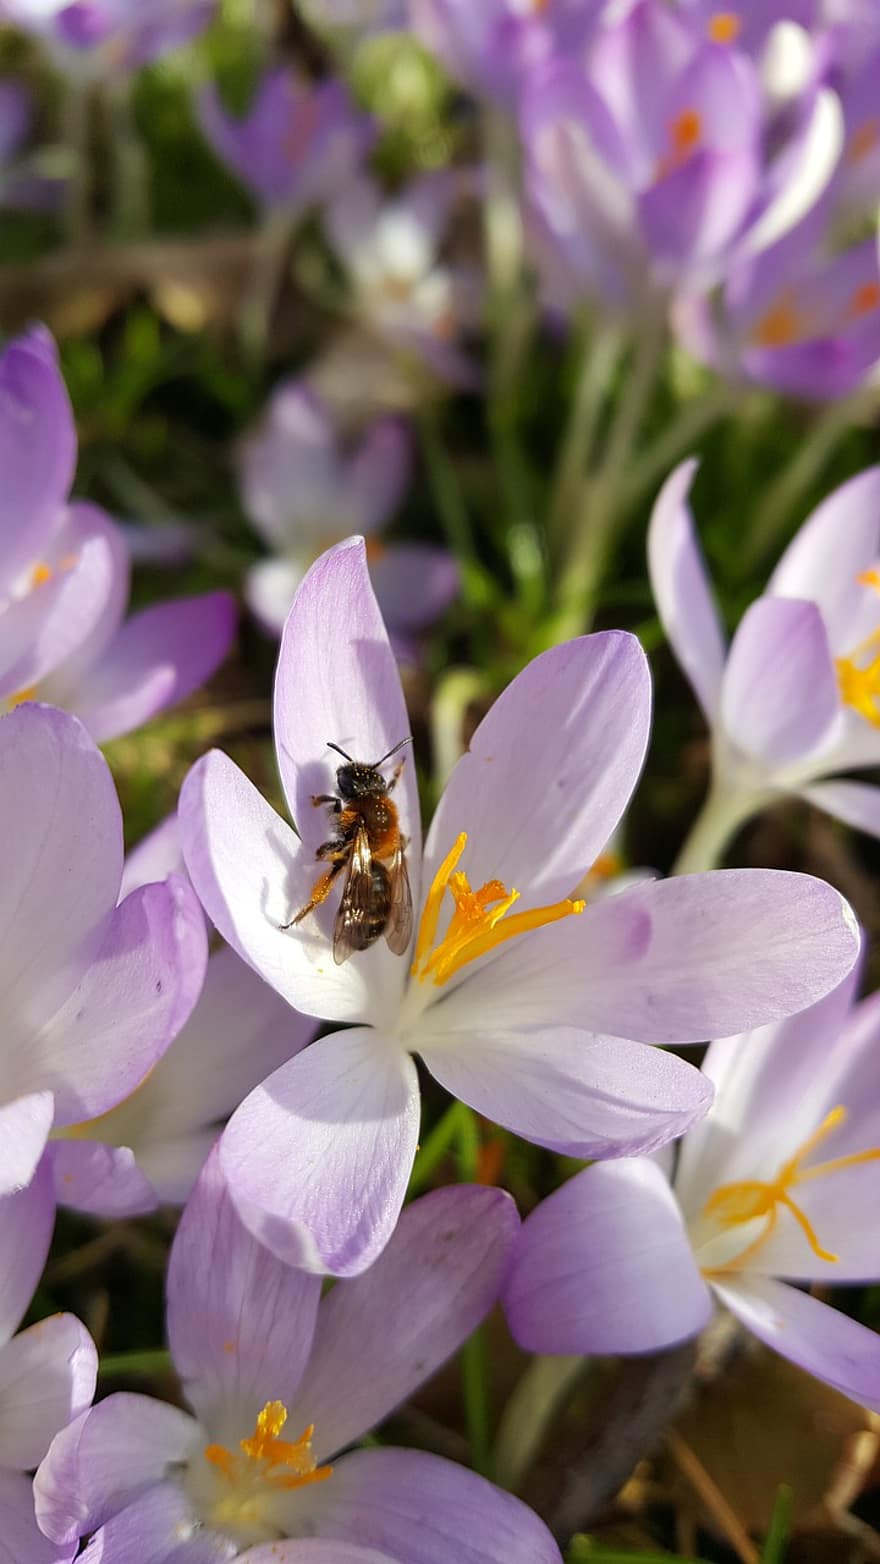 albină, sălbatic albine, şofran, floare, inflori, a inflori, floare luncă, primăvară, violet, roz, liliac